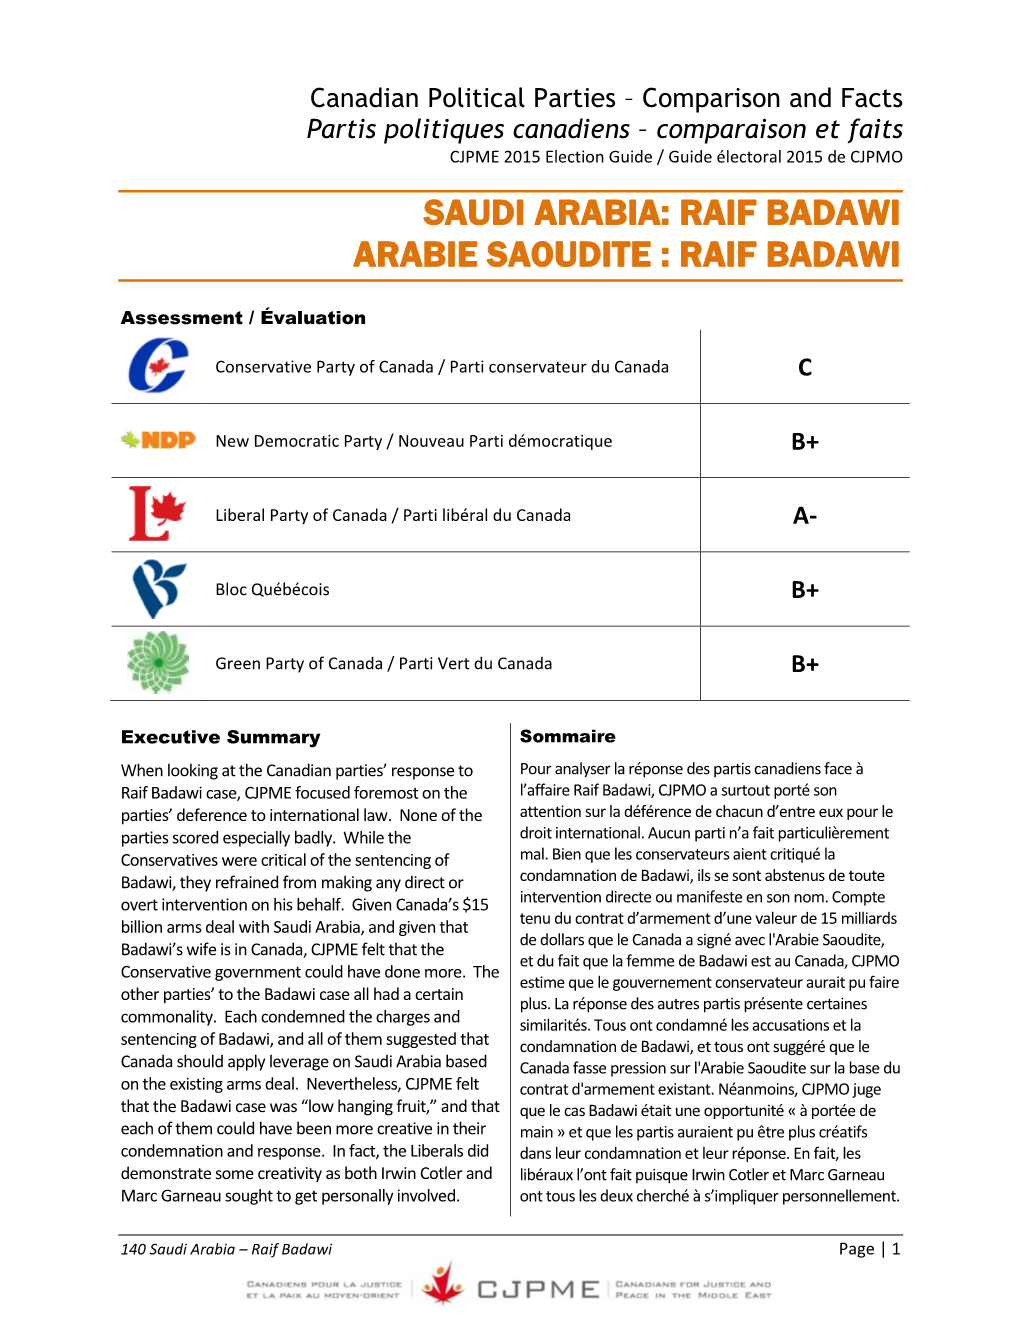 Canadian Political Parties – Comparison and Facts Partis Politiques Canadiens – Comparaison Et Faits CJPME 2015 Election Guide / Guide Électoral 2015 De CJPMO